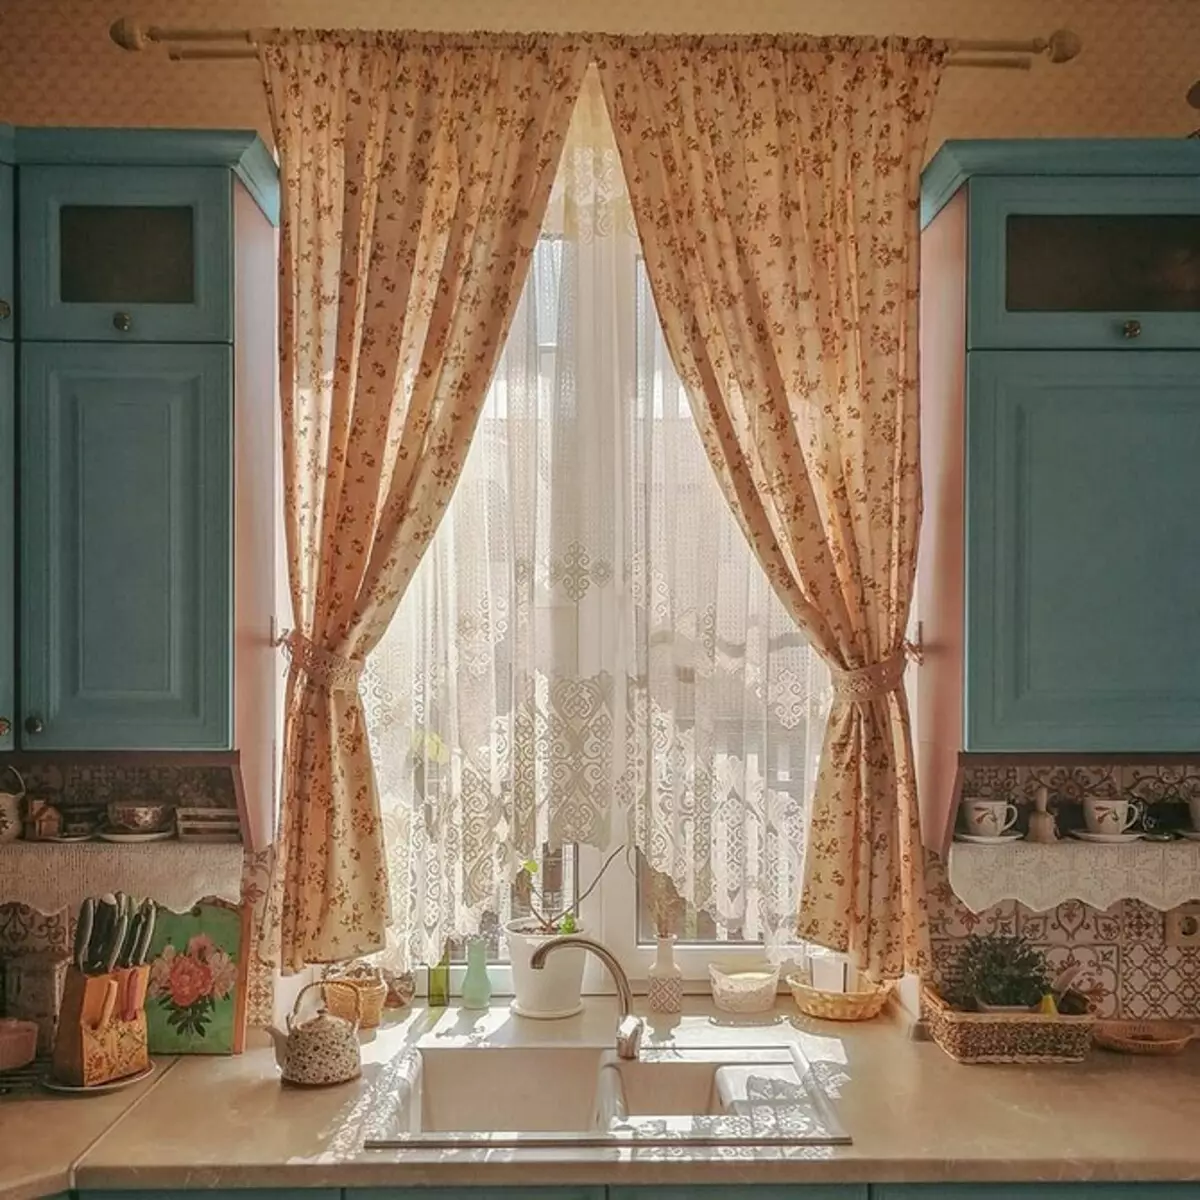 ديكور النافذة الجميلة في المطبخ: النظر في نوع الحلقة والأسلوب الداخلي 4732_56